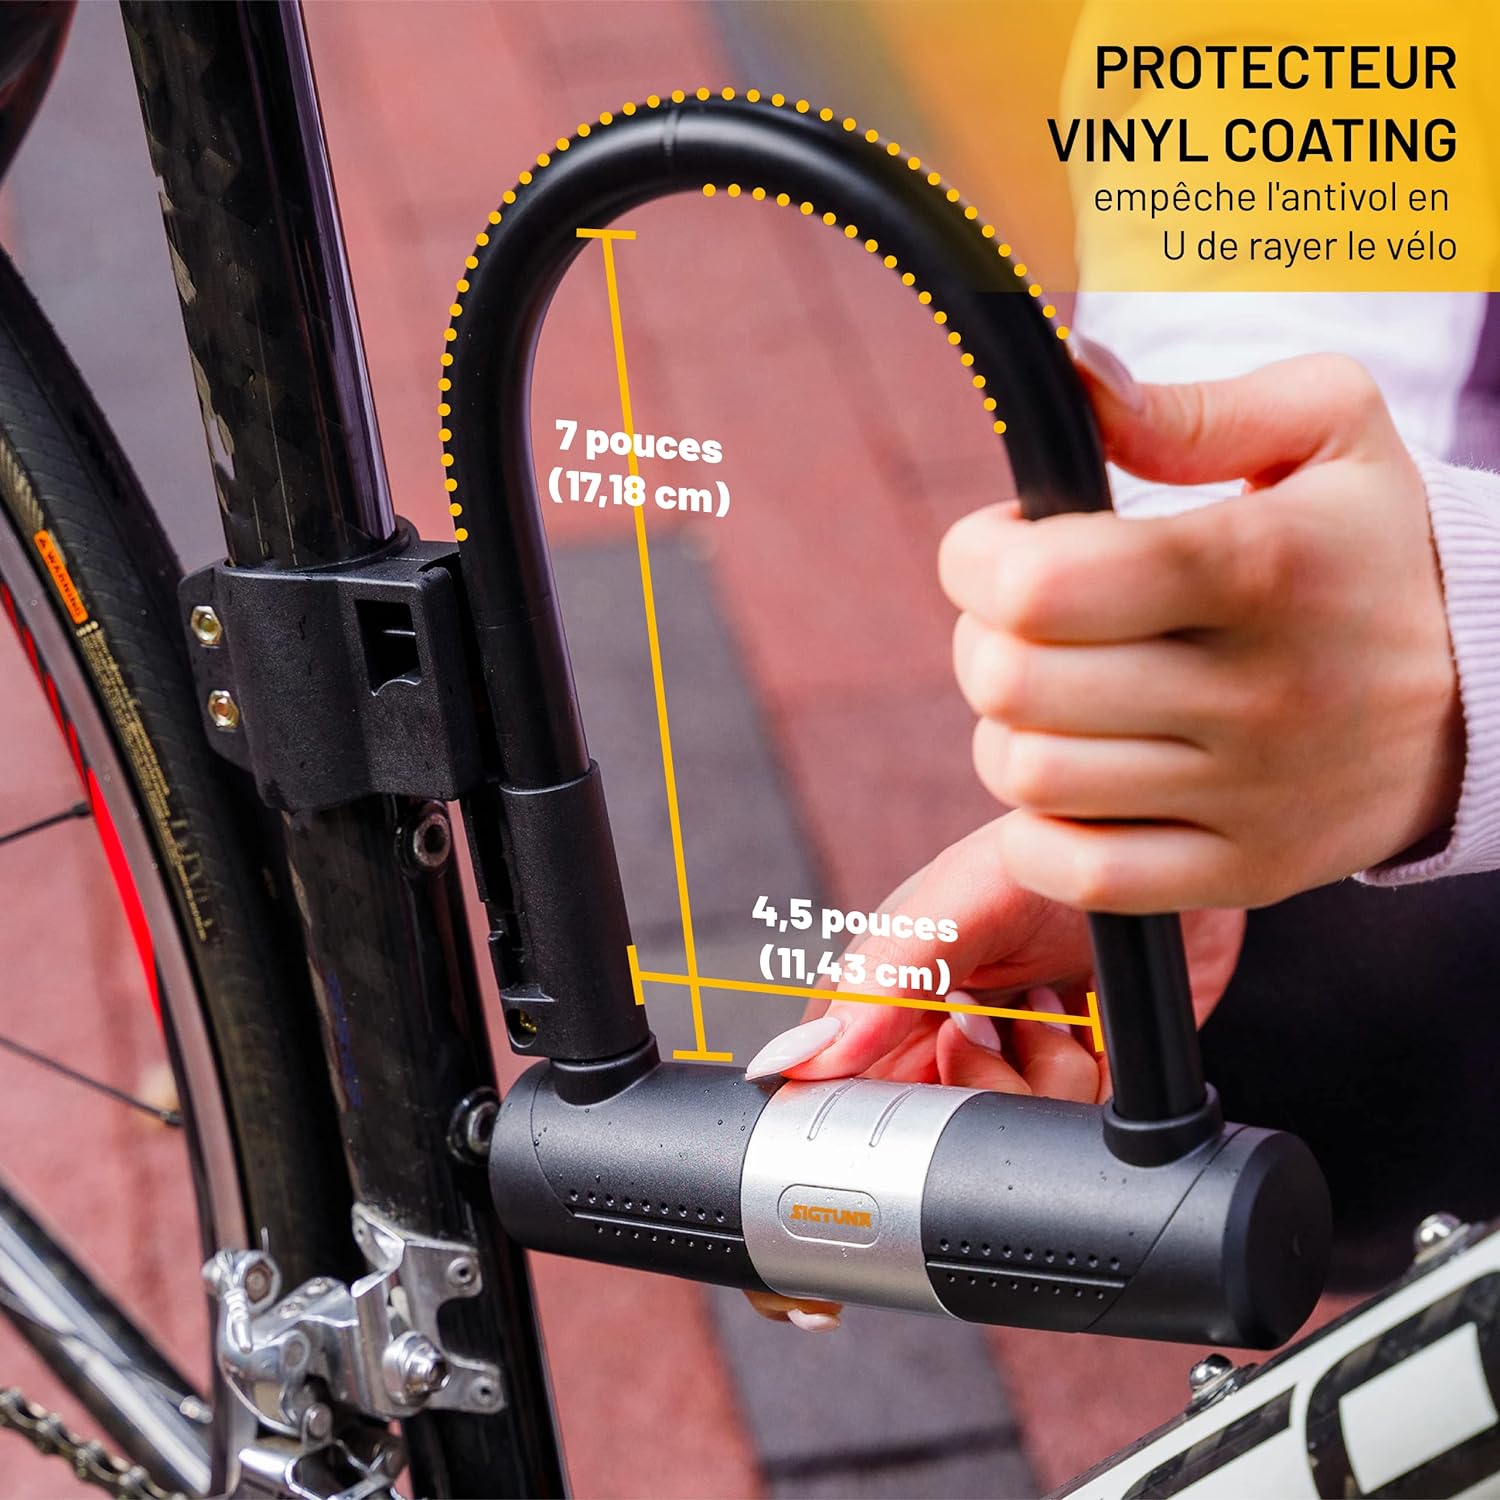 SIGTUNA Antivol Velo avec 1,2m Câble, 16 mm Robuste Antivol de Vélo et Support, 3 Clés de Haute Sécurité pour Vélo de Route, Vélo Pliant, Moto (Jaune) - fitnessterapy